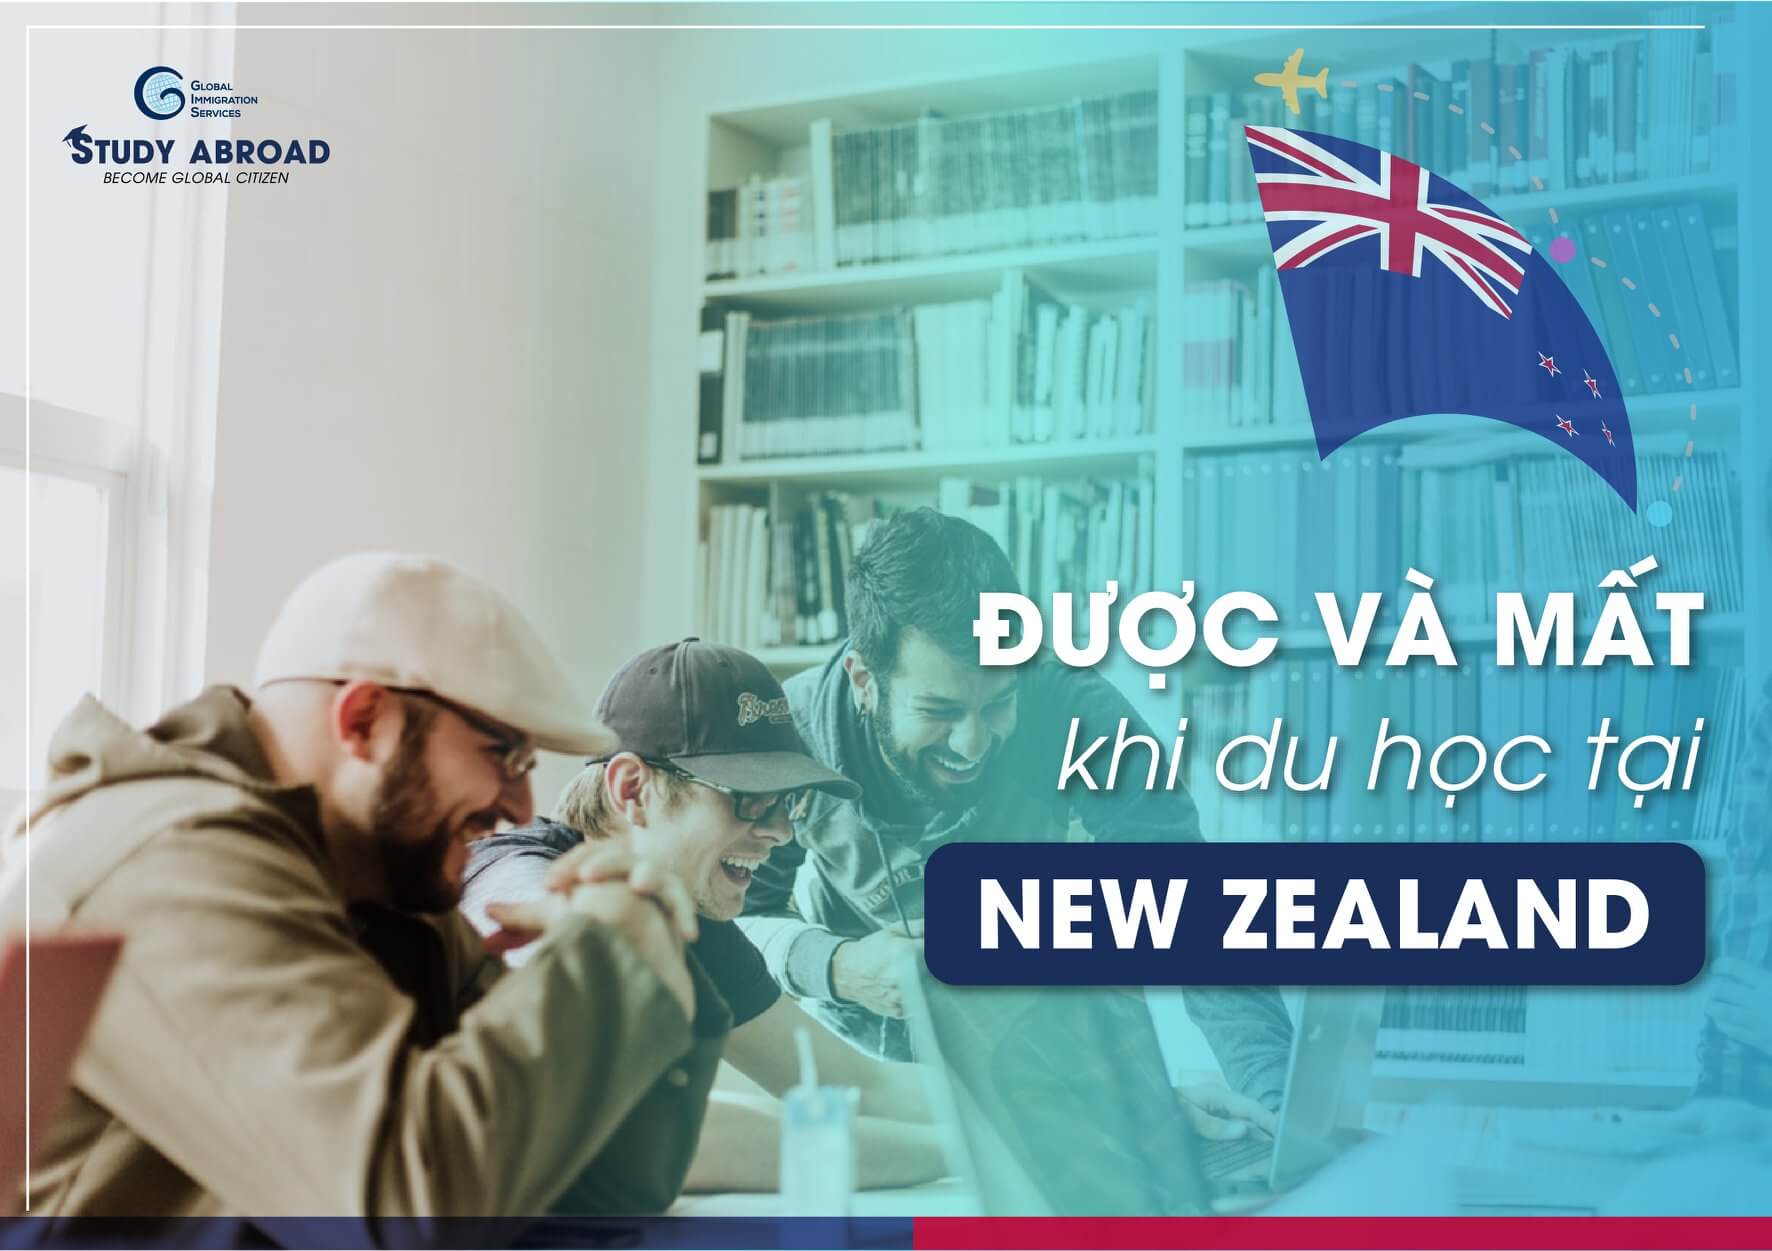 Du học New Zealand, bạn sẽ được và mất gì?